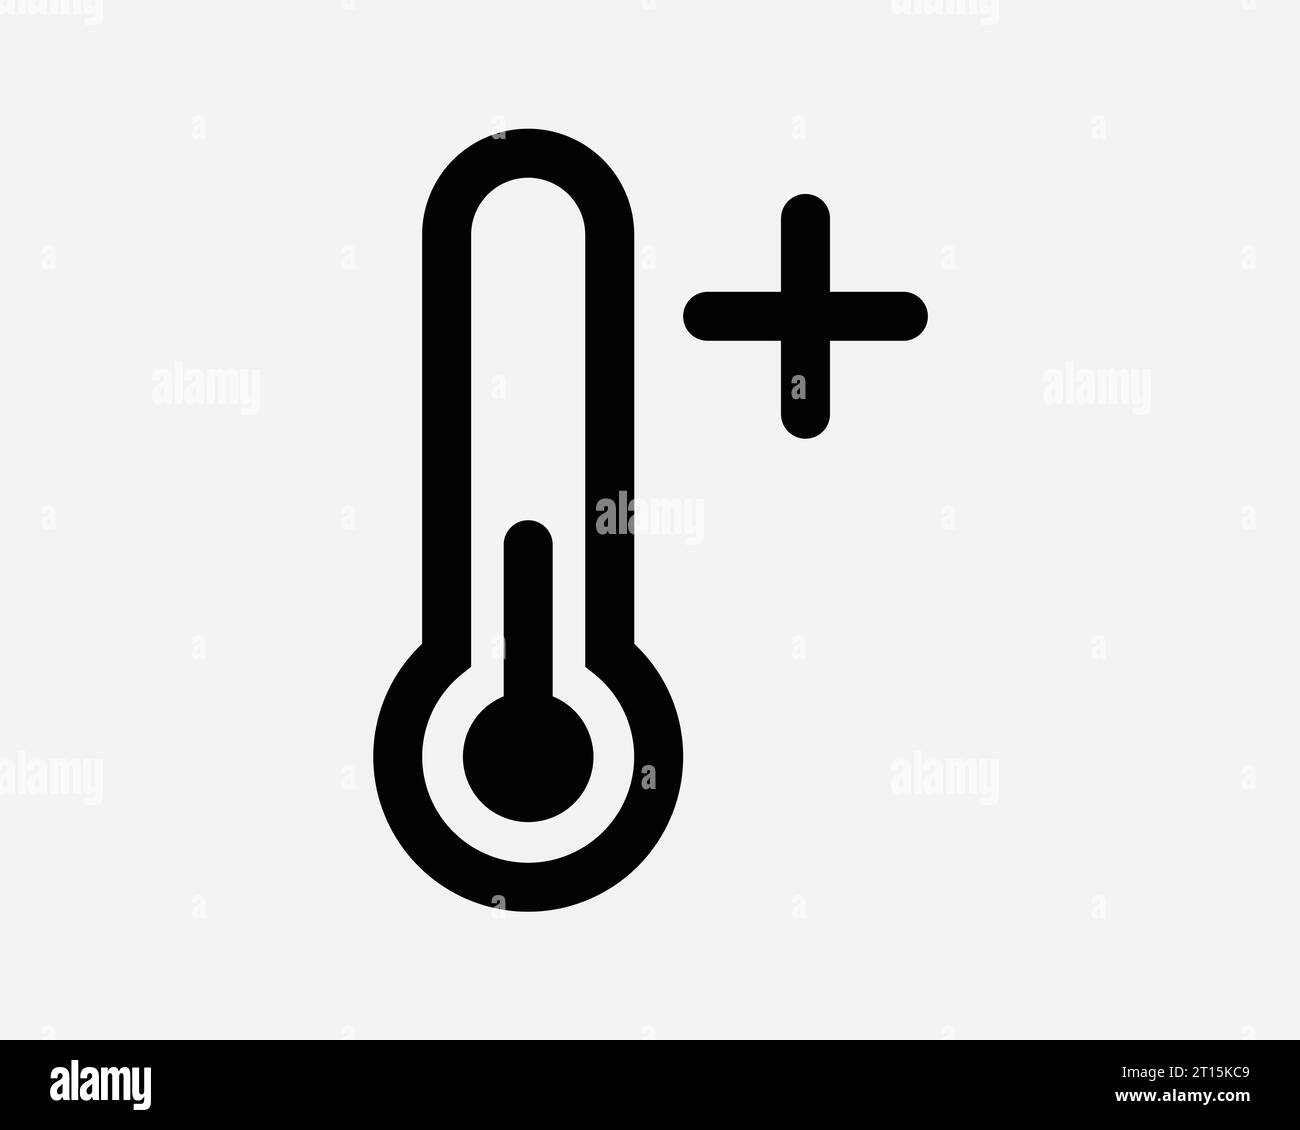 Termometro temperatura positiva Hot Plus aumento aumento aumento aumento aumento aumento maggiore riscaldamento bollitura elevata forma bianco nero contorno icona simbolo simbolo EPS Vector Illustrazione Vettoriale